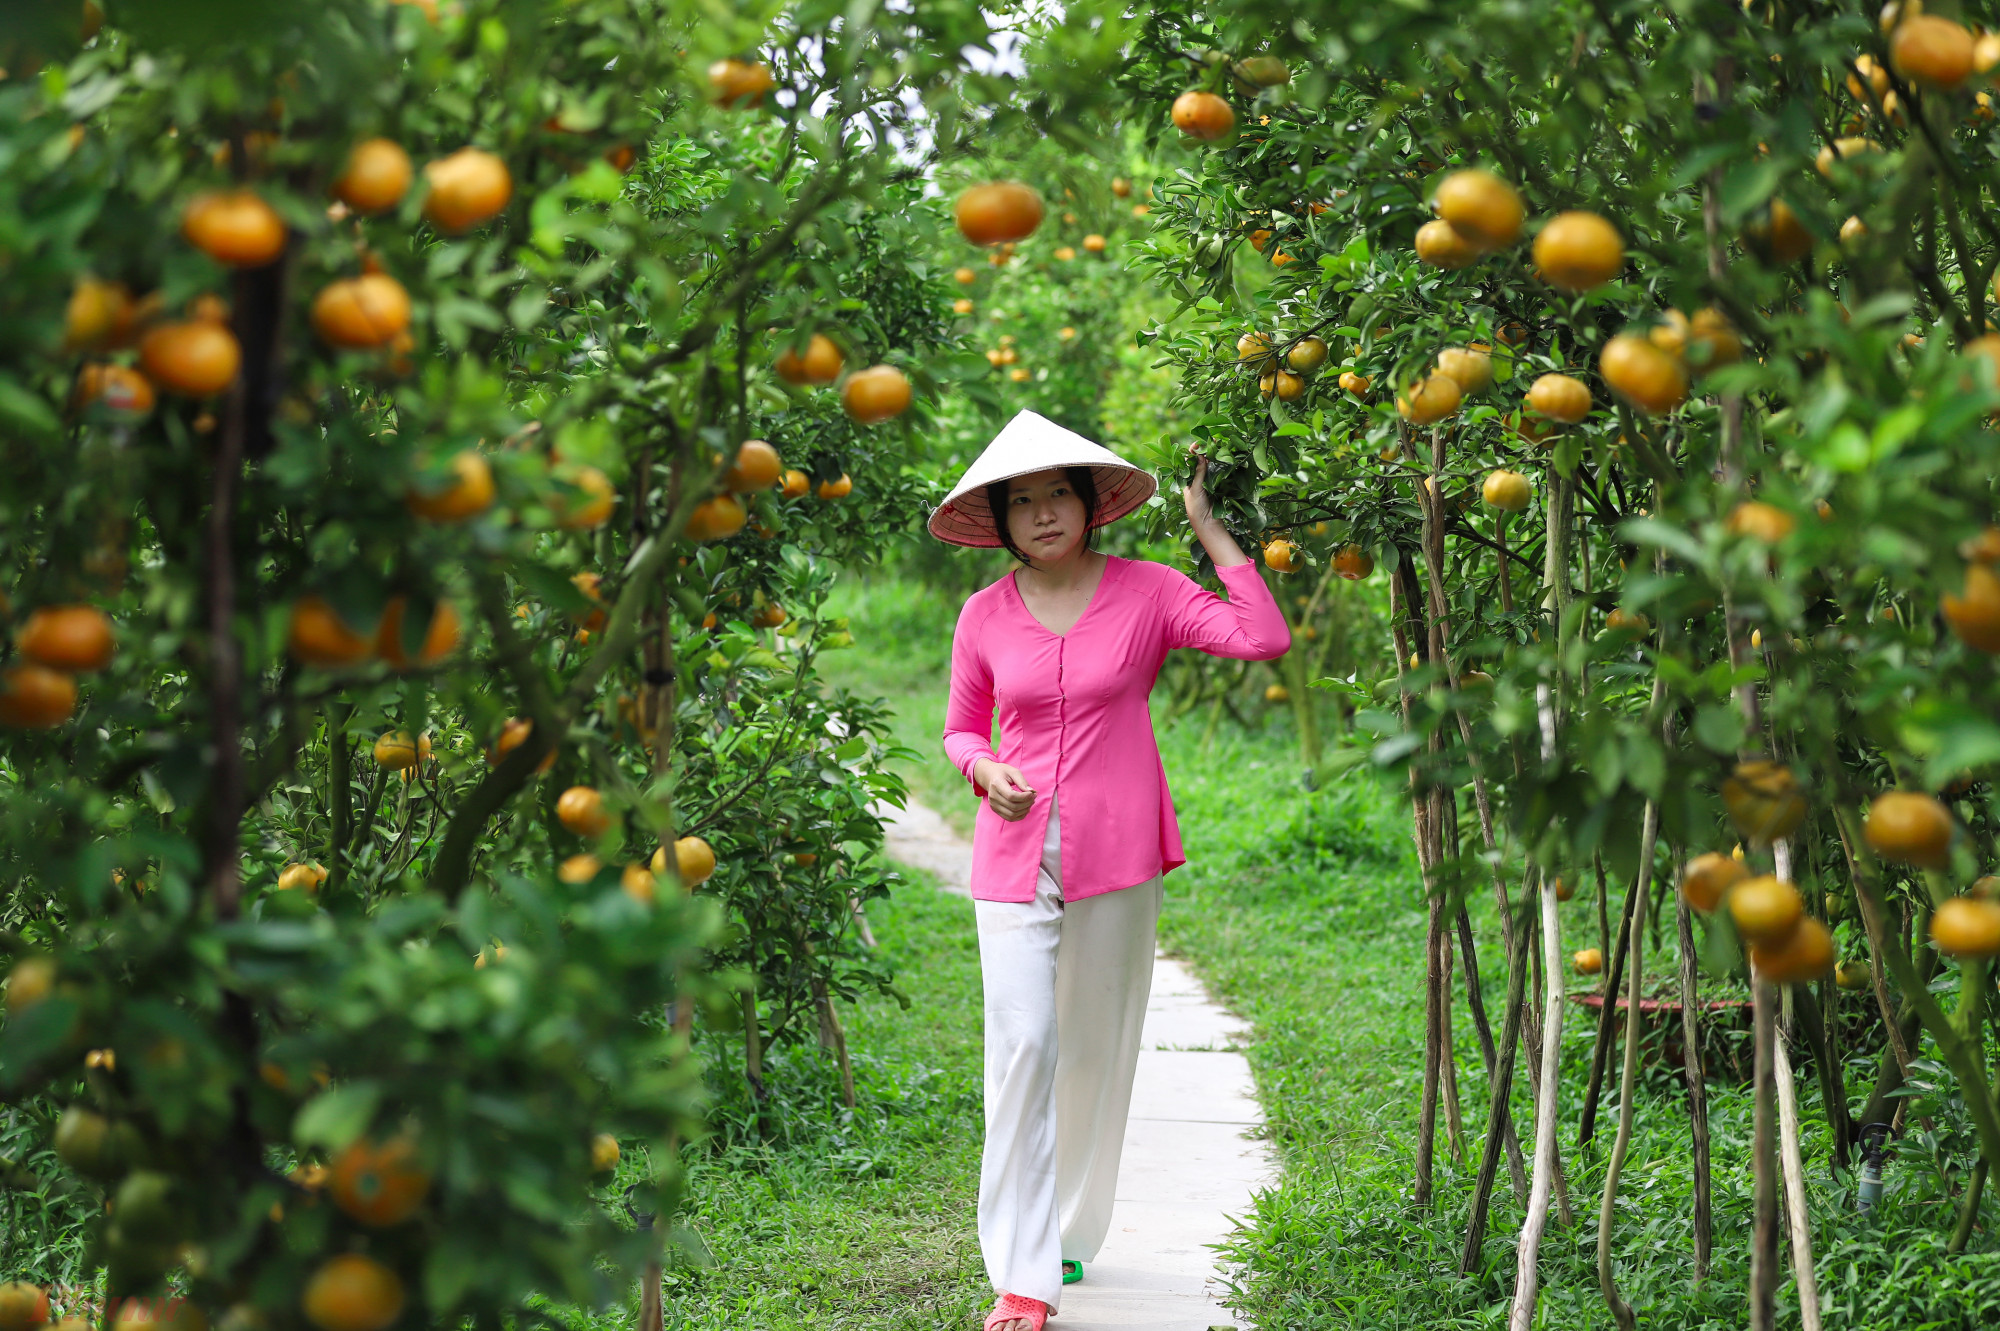 Huyện Lai Vung, tỉnh Đồng Tháp là địa phương trồng quýt hồng quy mô lớn và nổi tiếng ở miền Tây. Vào thời gian này, quýt hồng chín vàng ươm, bắt đầu bước vào mùa thu hoạch.